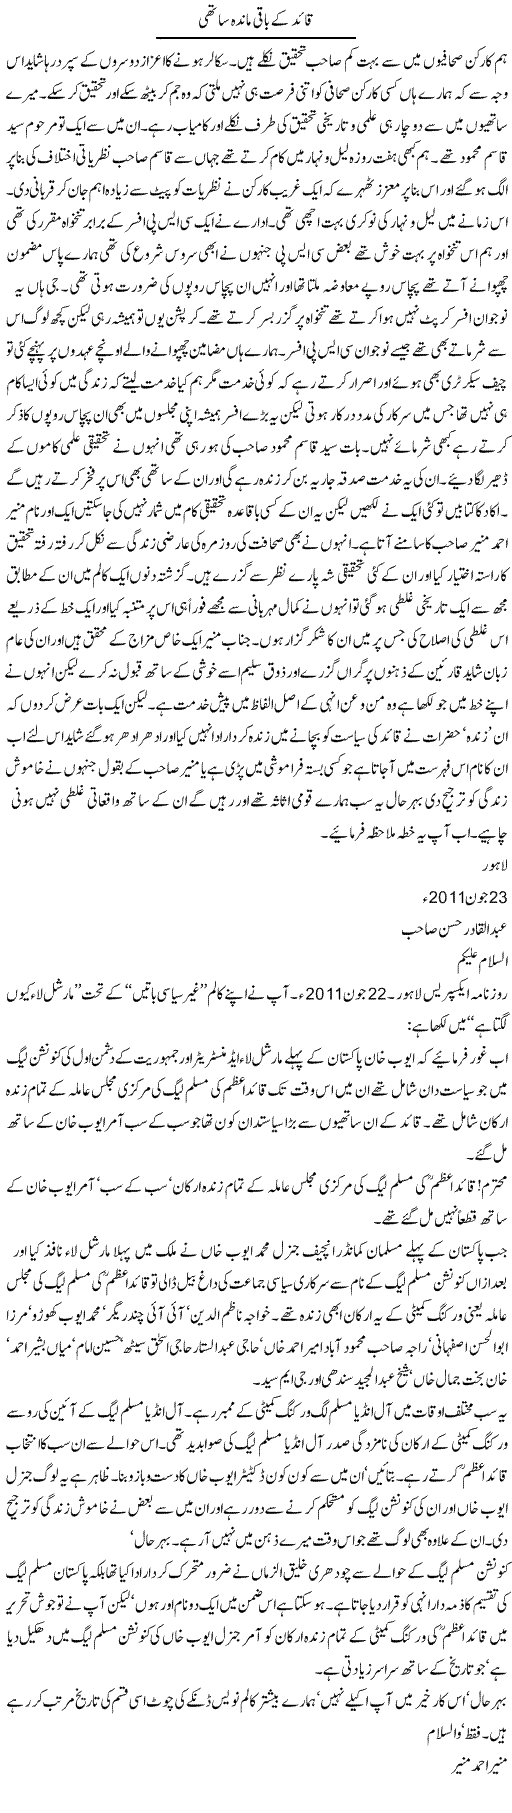 Muslim League and Ayub Khan Express Column Abdul Qadir 10 August 2011